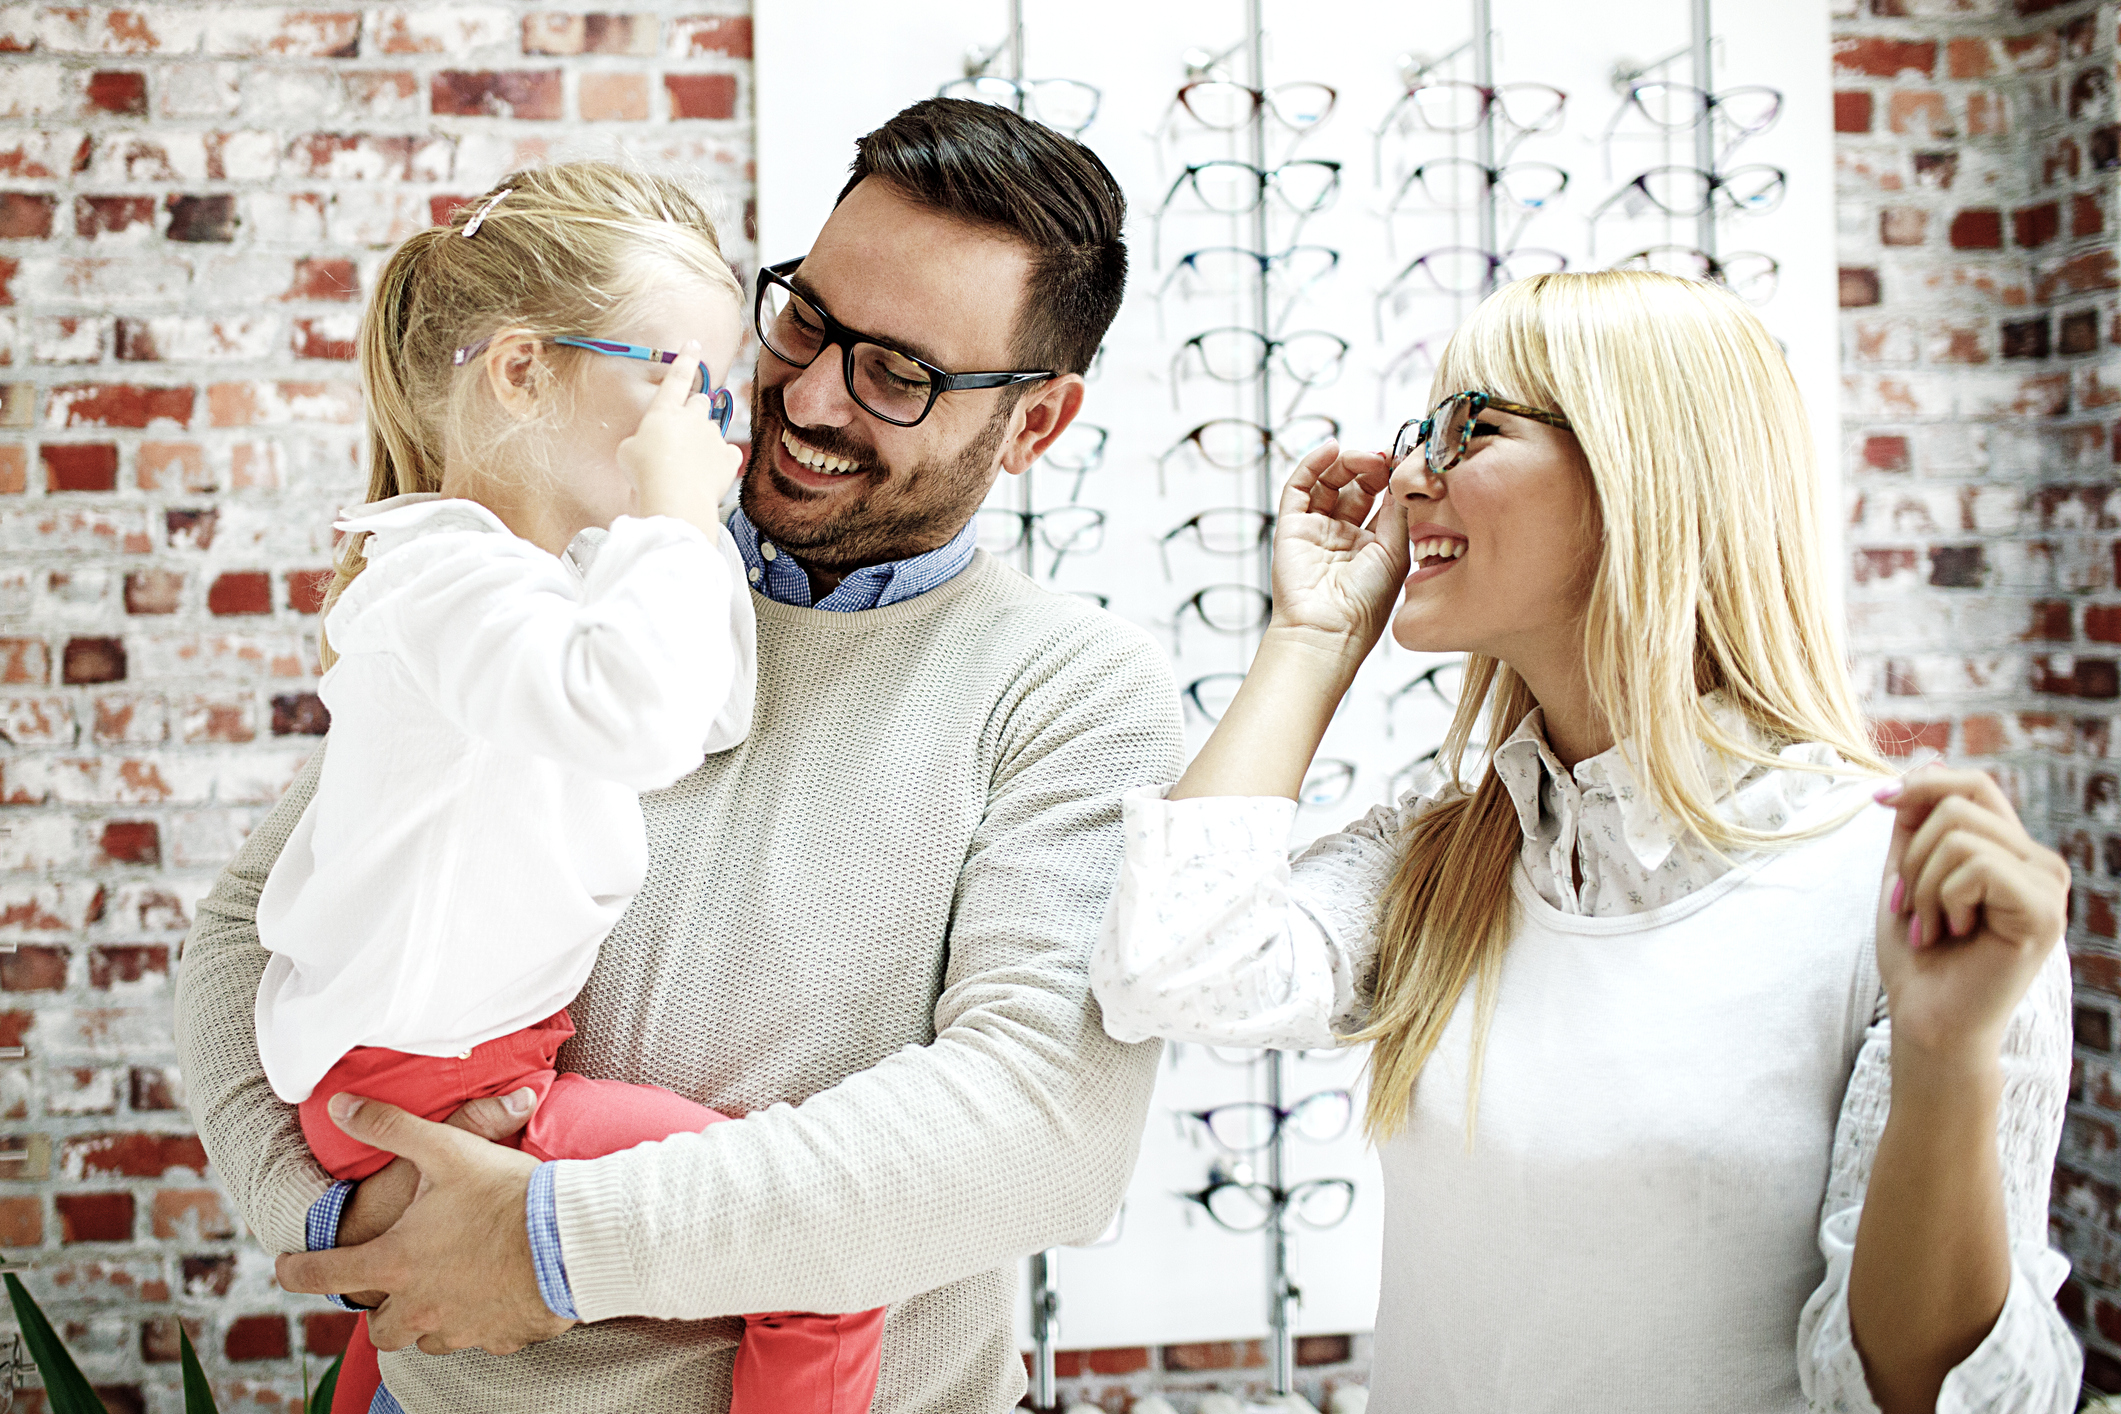 Choisir lunettes de vue pour enfant